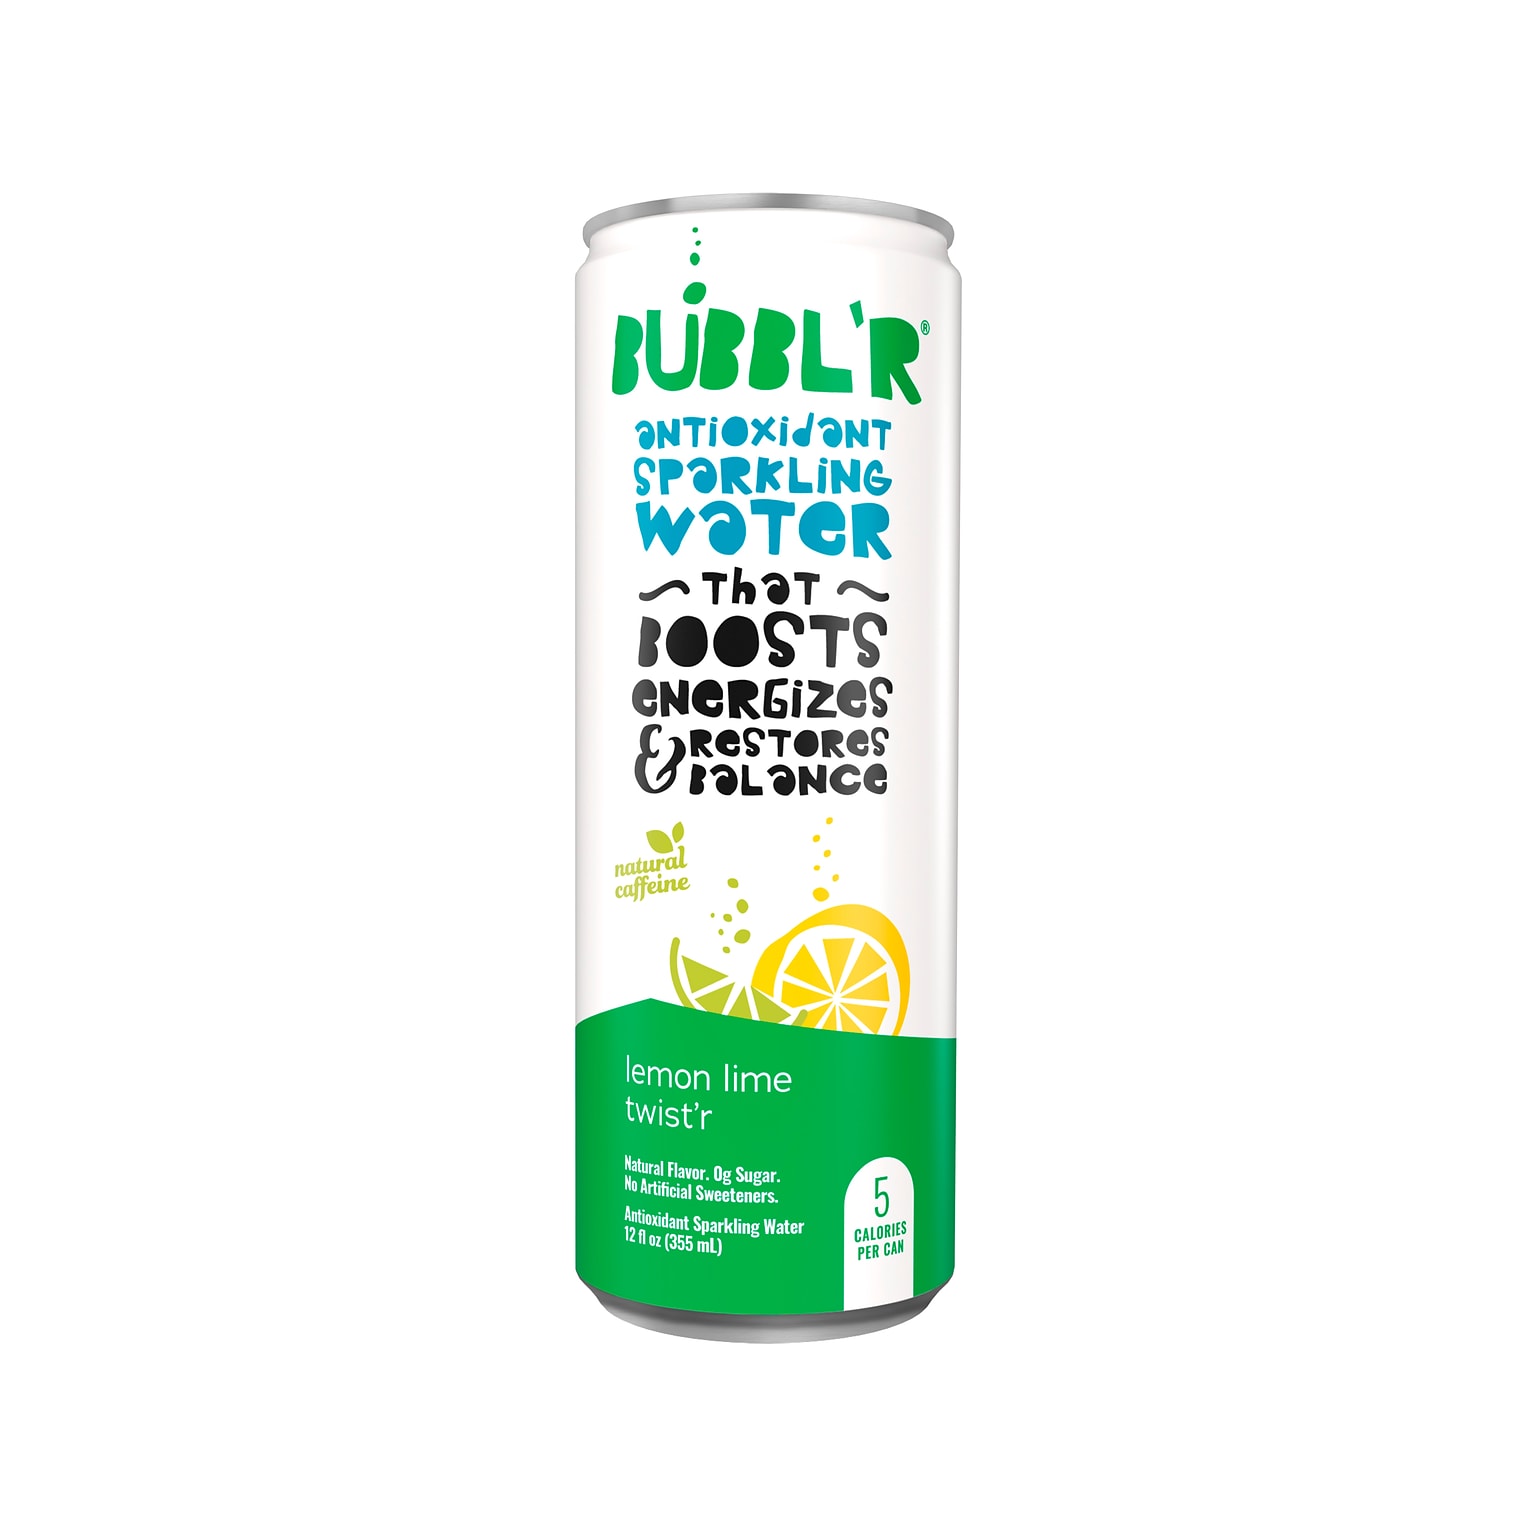 Bubblr Antioxidant Lemon Lime Twistr Flavored Sparkling Water, 12 fl. oz., 12 Cans/Carton (028435600145)